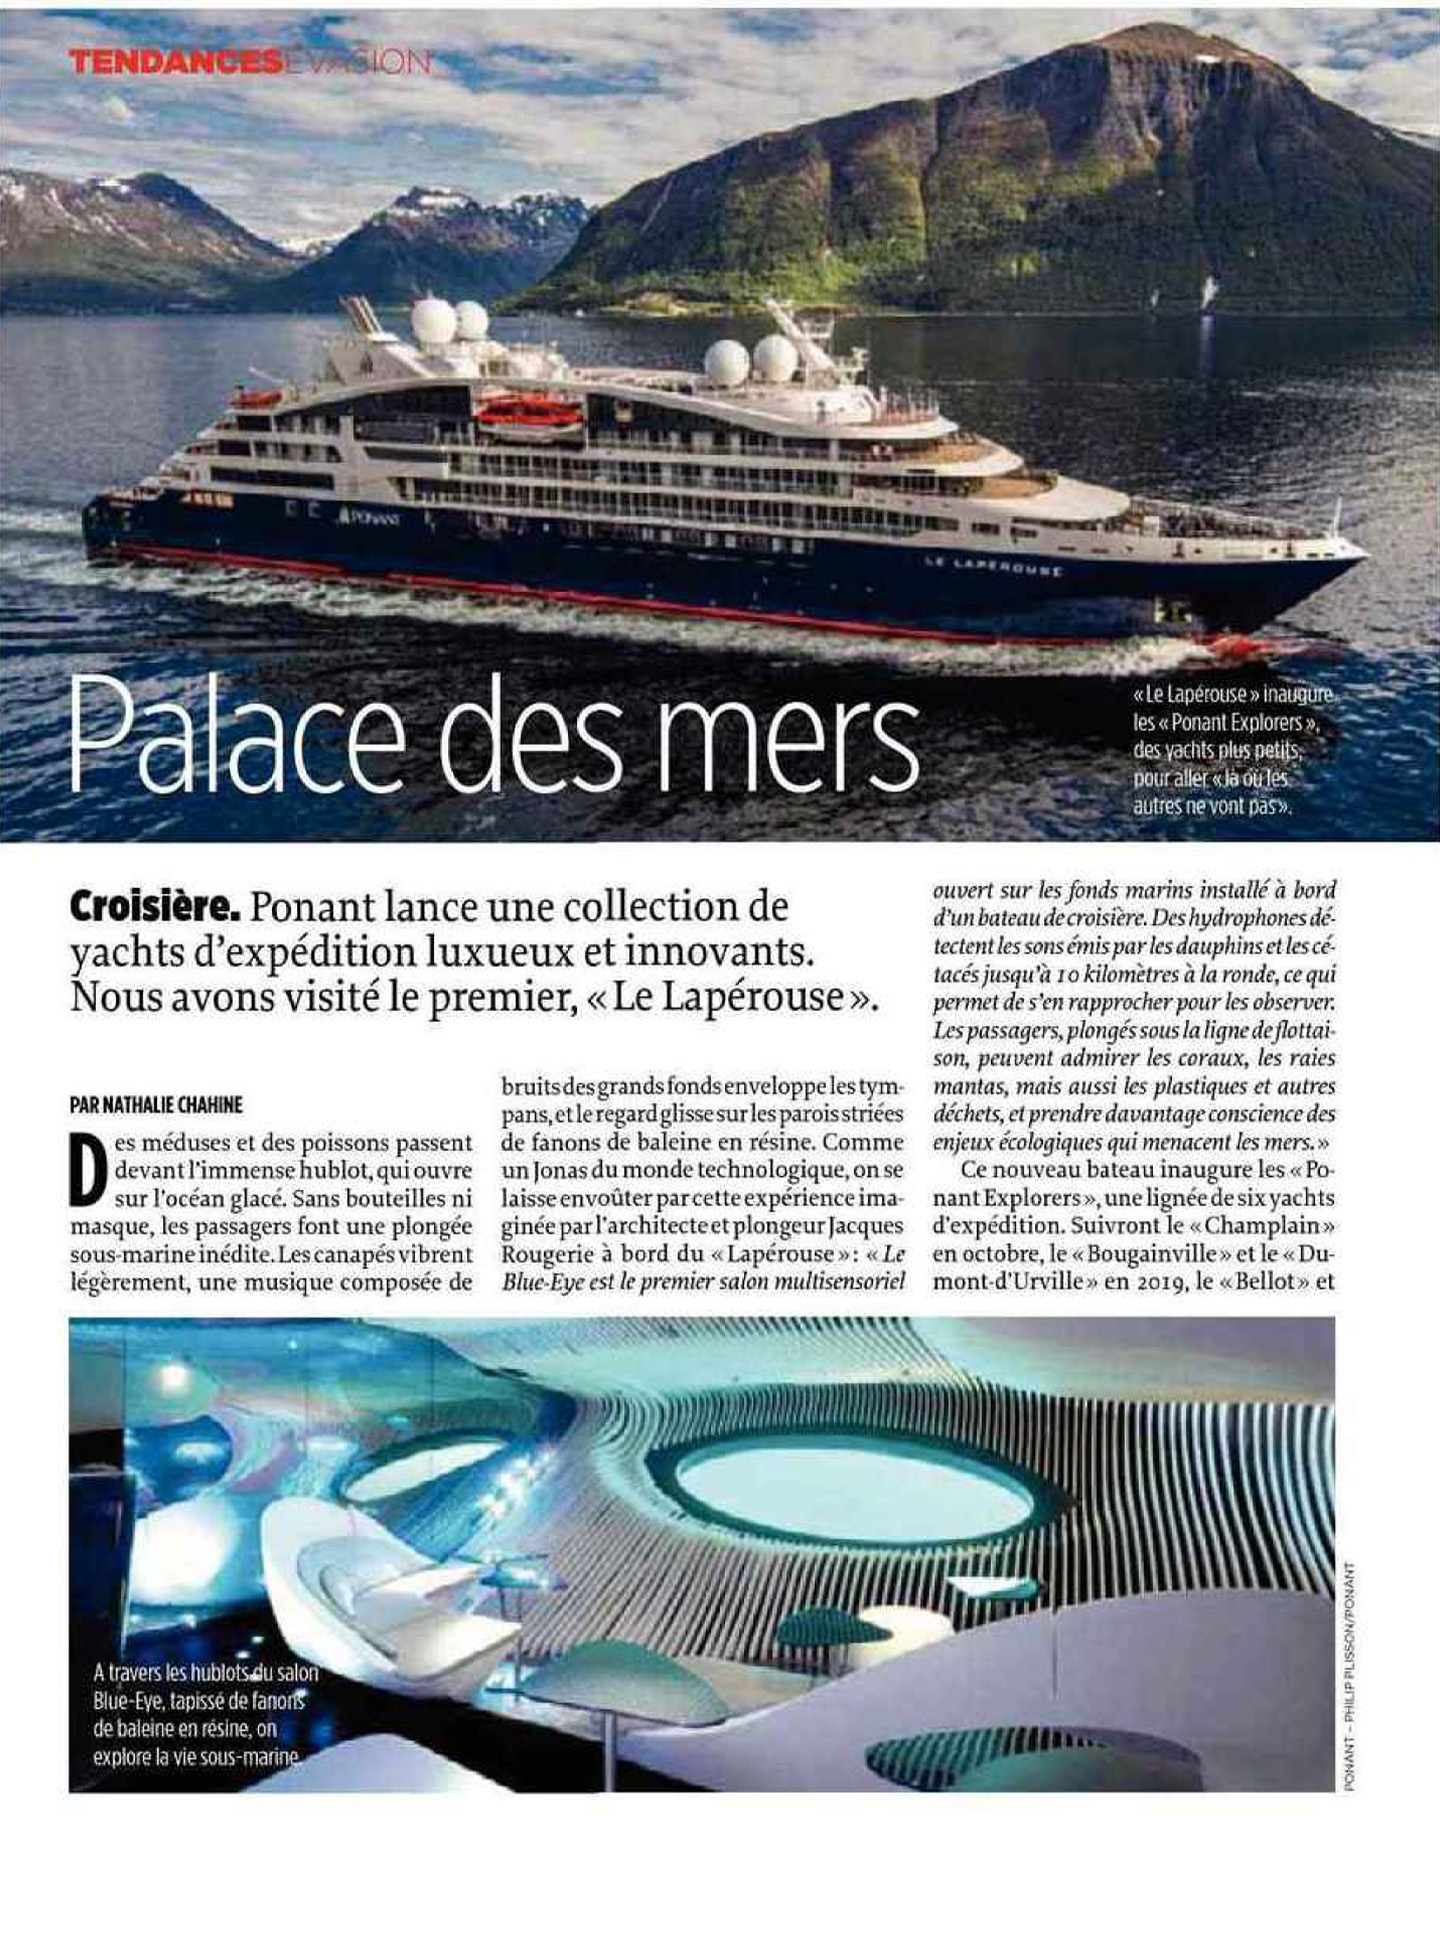 Article sur le Lapérouse, bateau de croisière ponant, designé par le studio d'architecture d'intérieur jean-philippe nuel dans le magazine le point